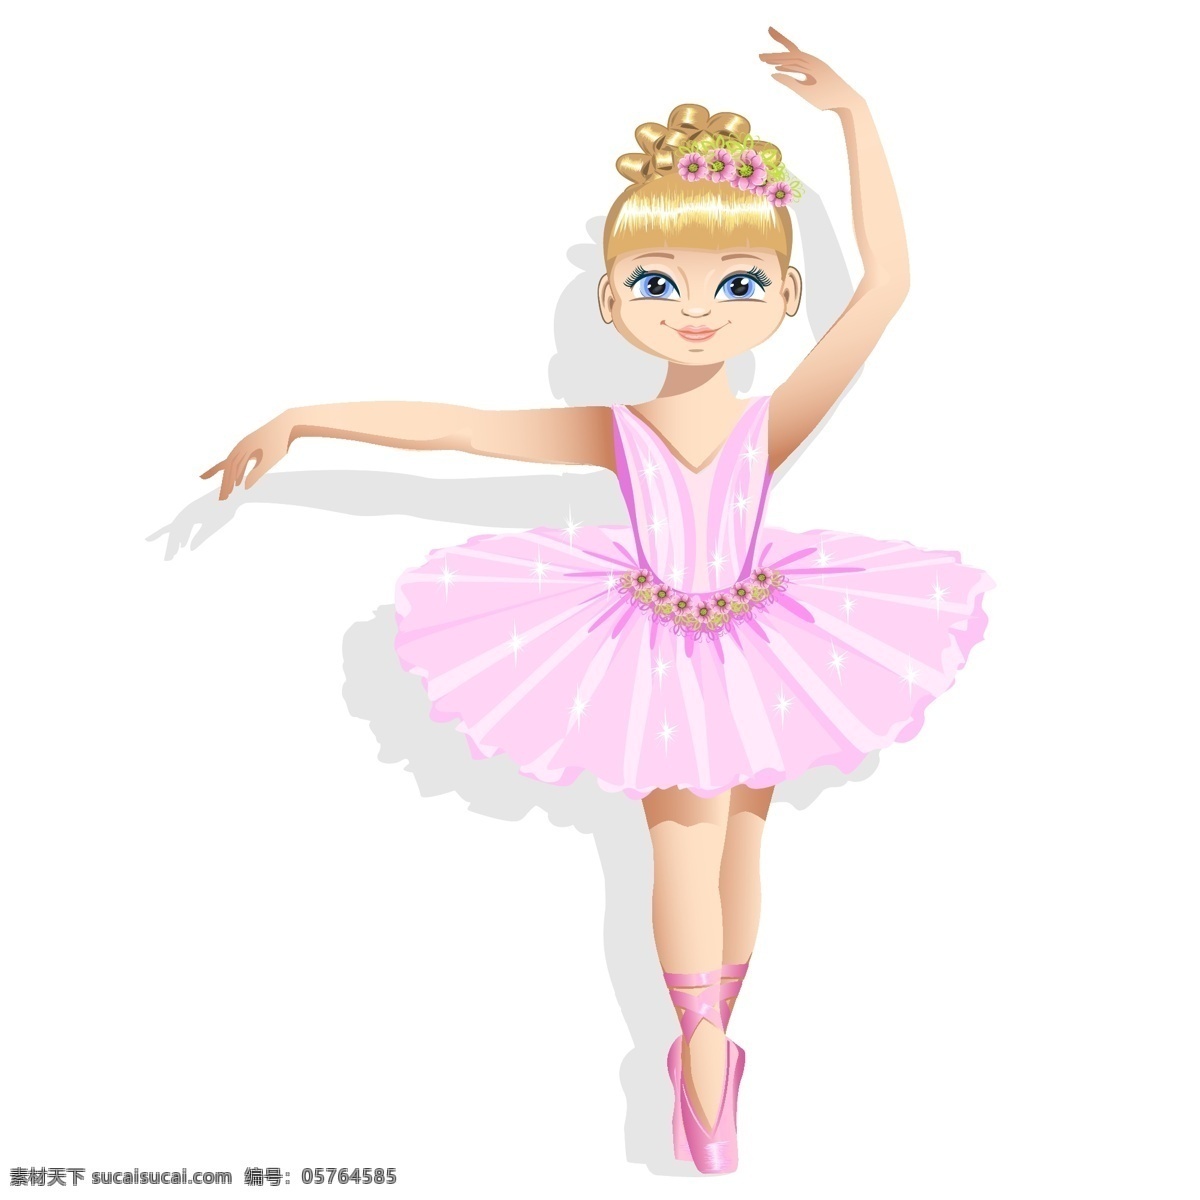 裙装 芭蕾舞 女孩 舞蹈 裙子 金发 矢量图 矢量 高清图片